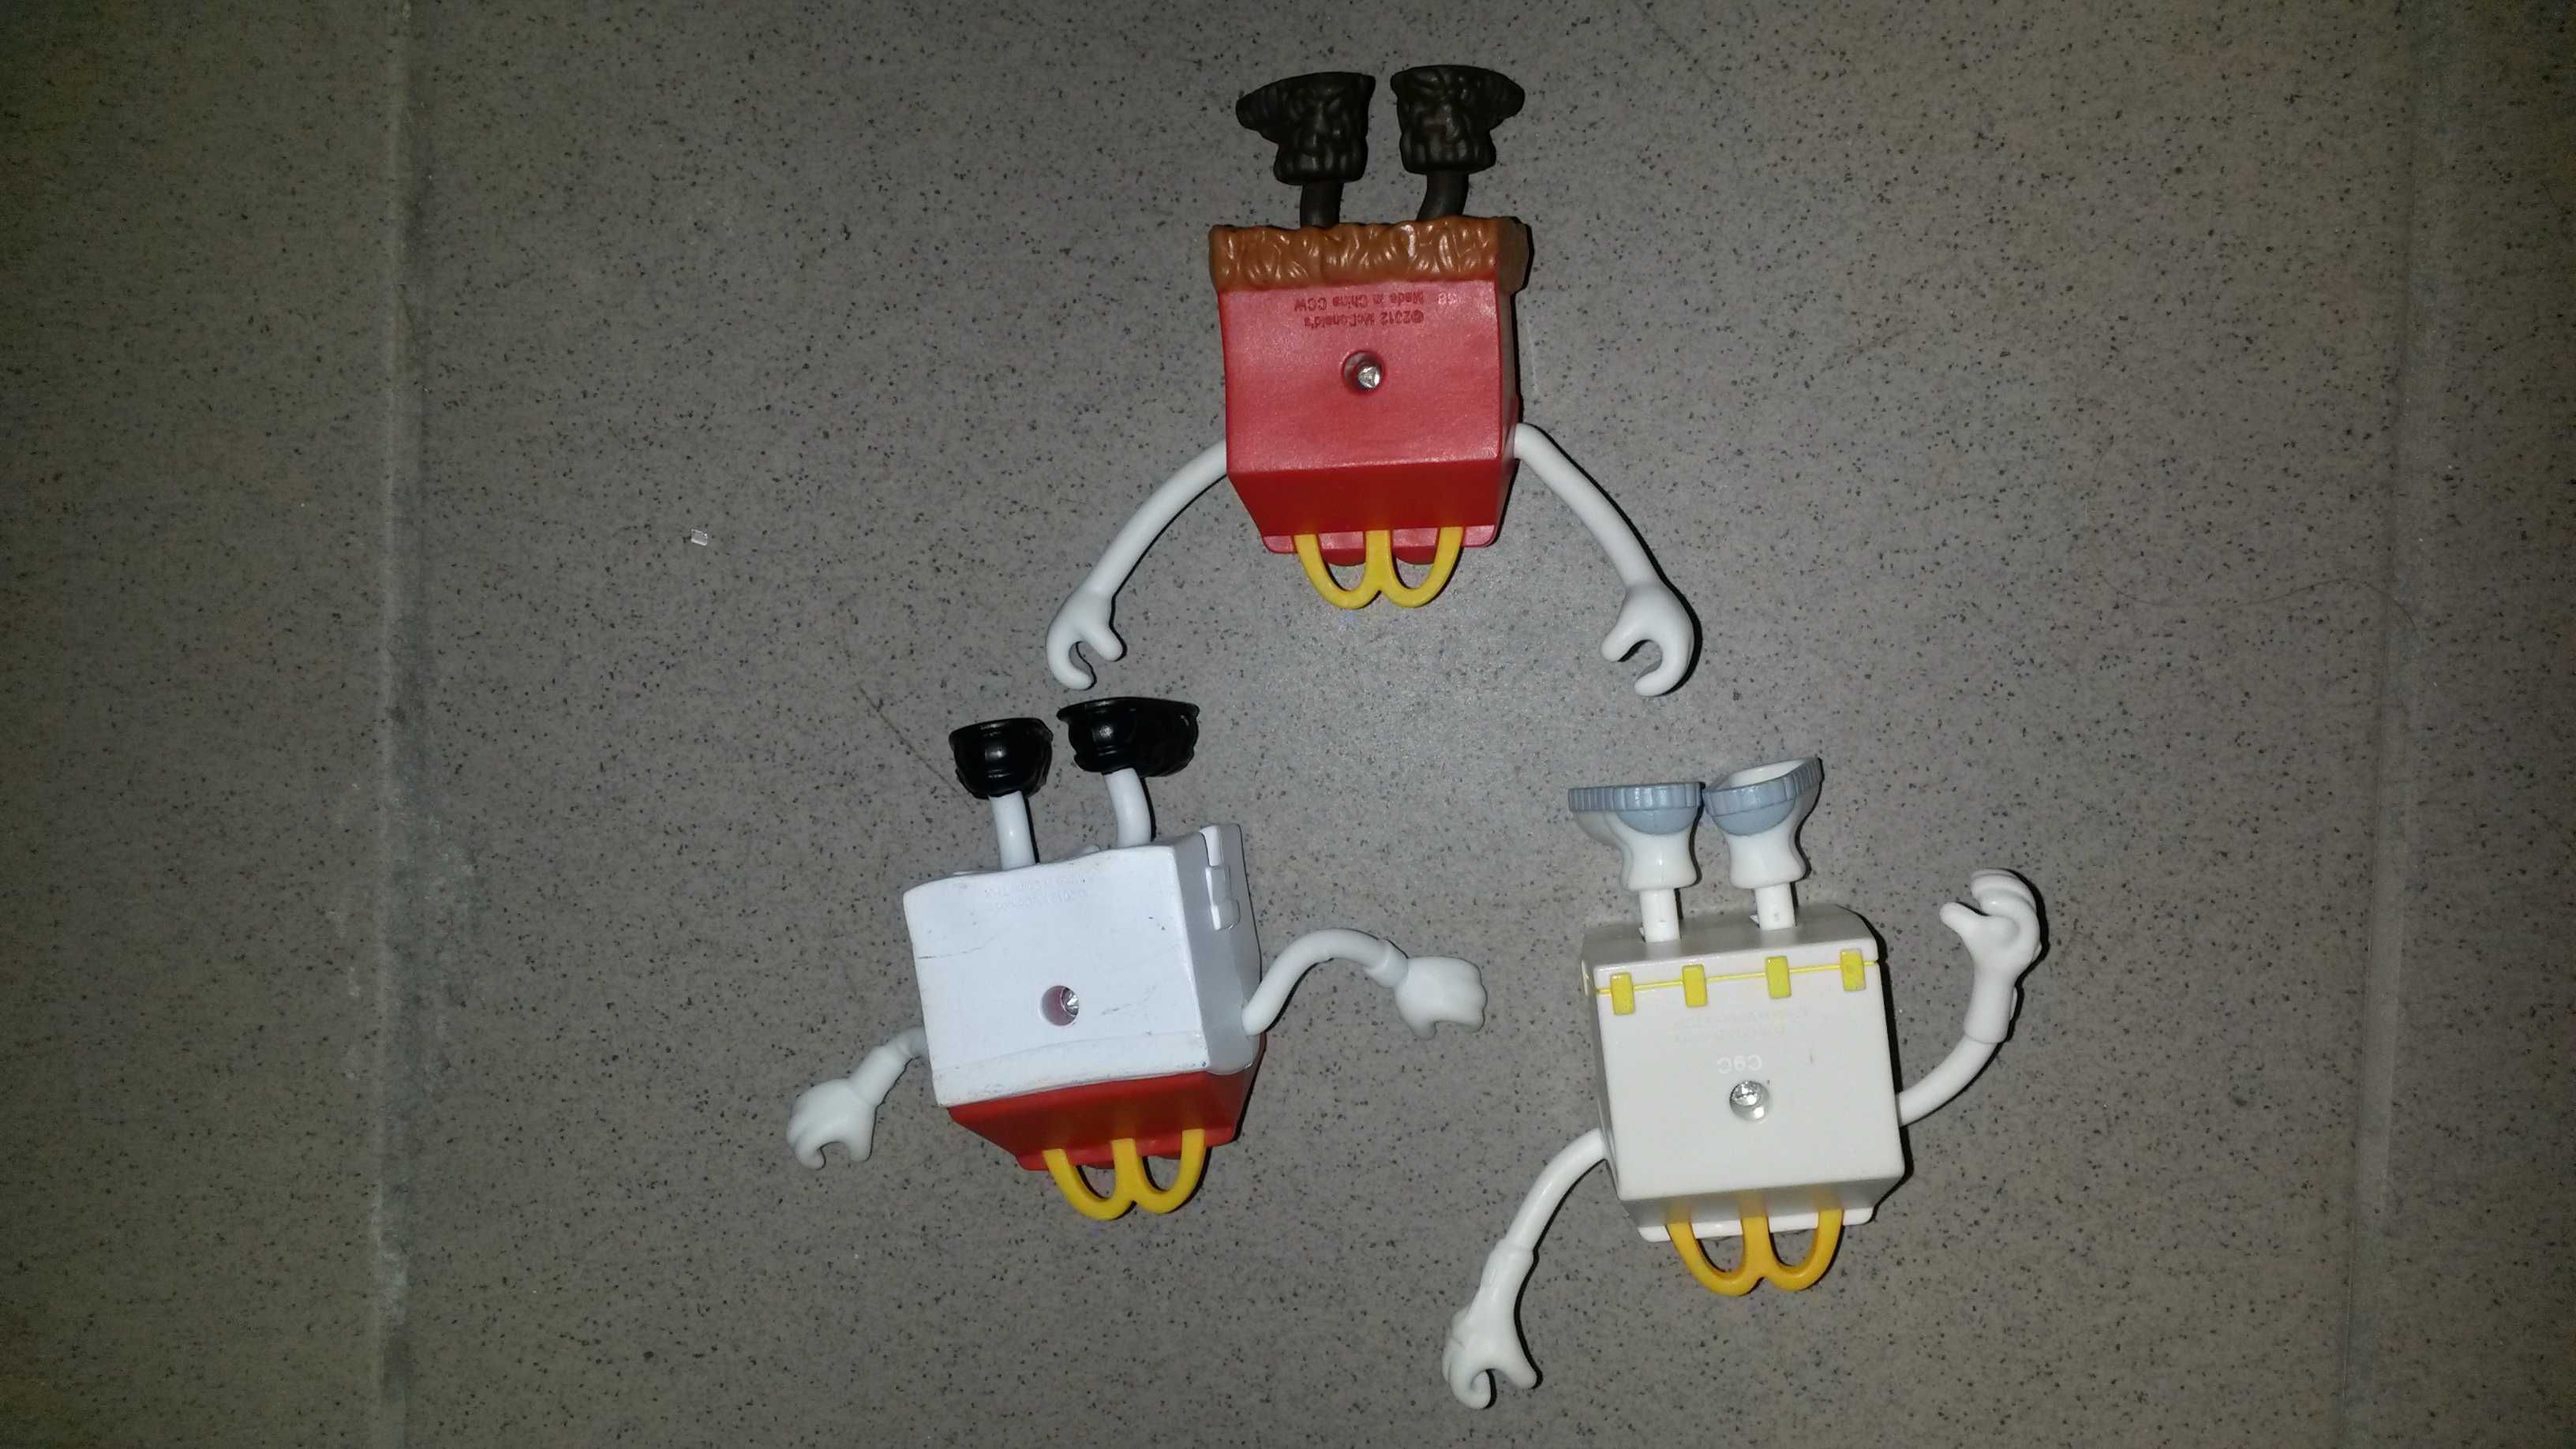 Figurki kolekcja McDonald zestaw do kolekcji